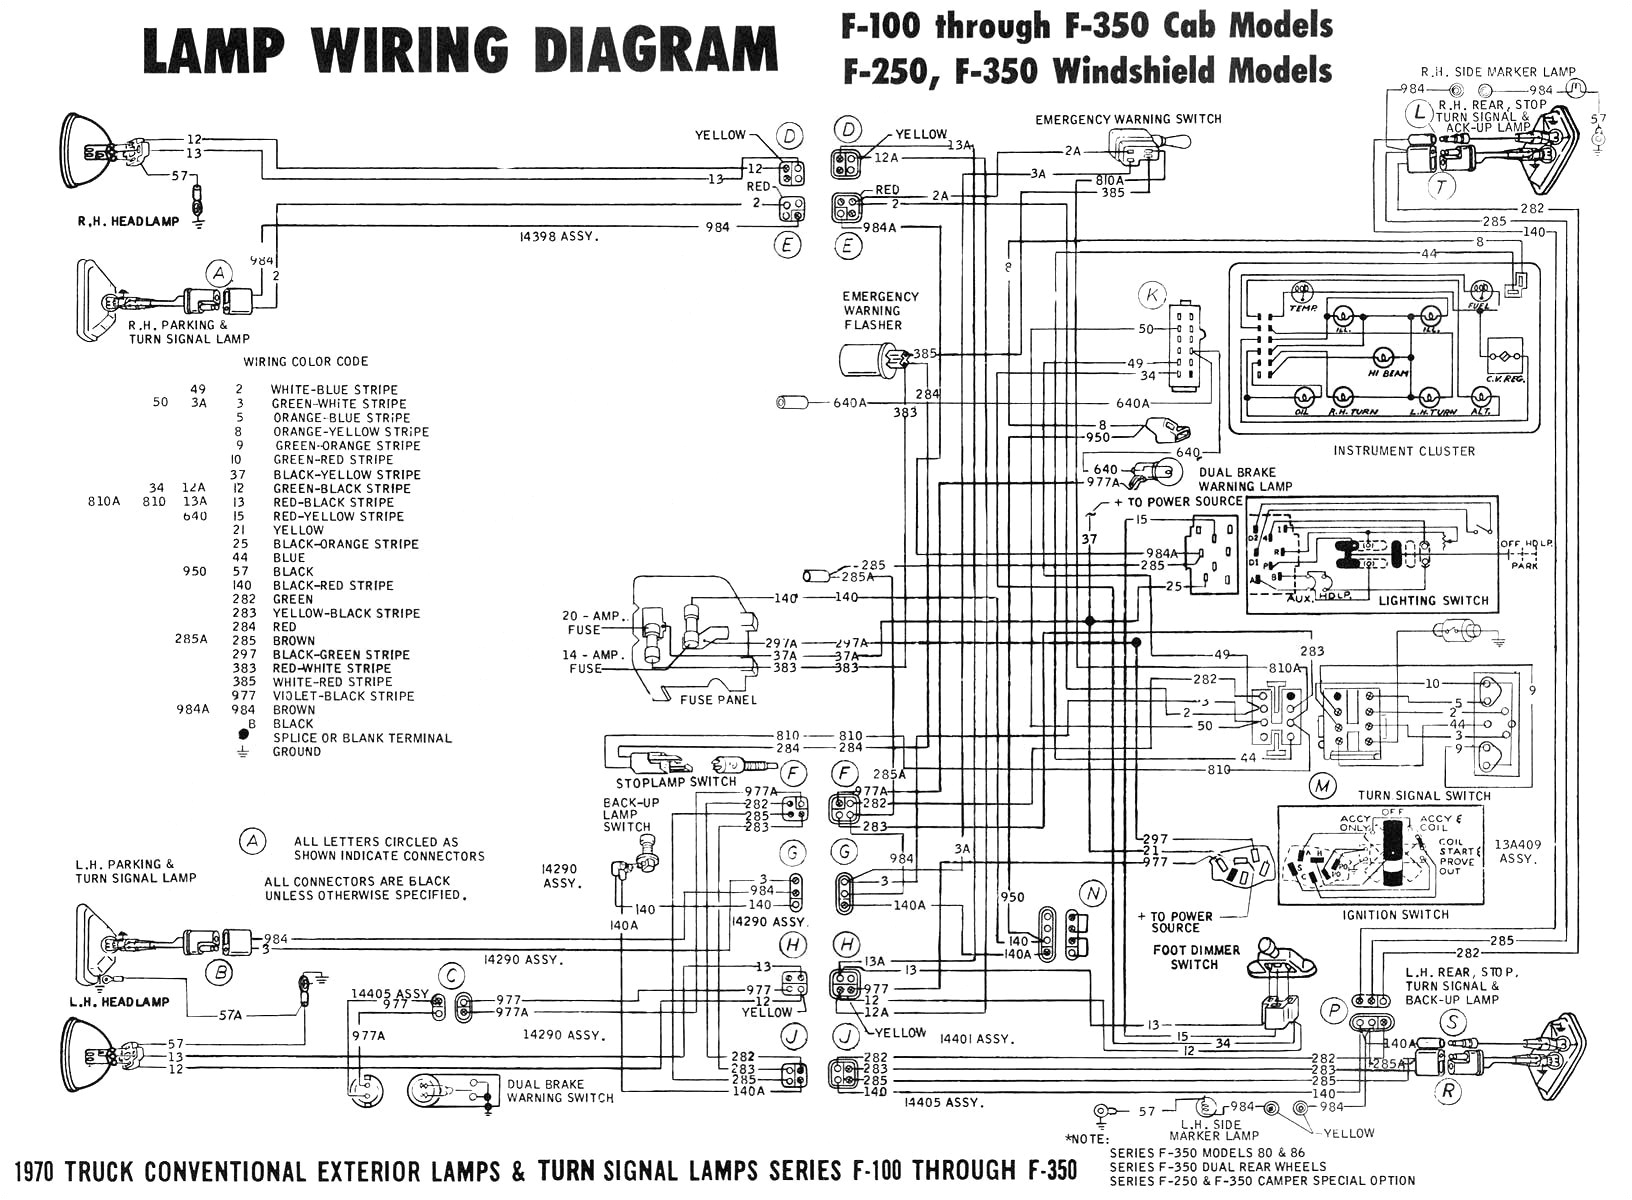 120v led light bulb circuit diagram lzk gallery wiring diagram page 120v led light bulb circuit diagram lzk gallery